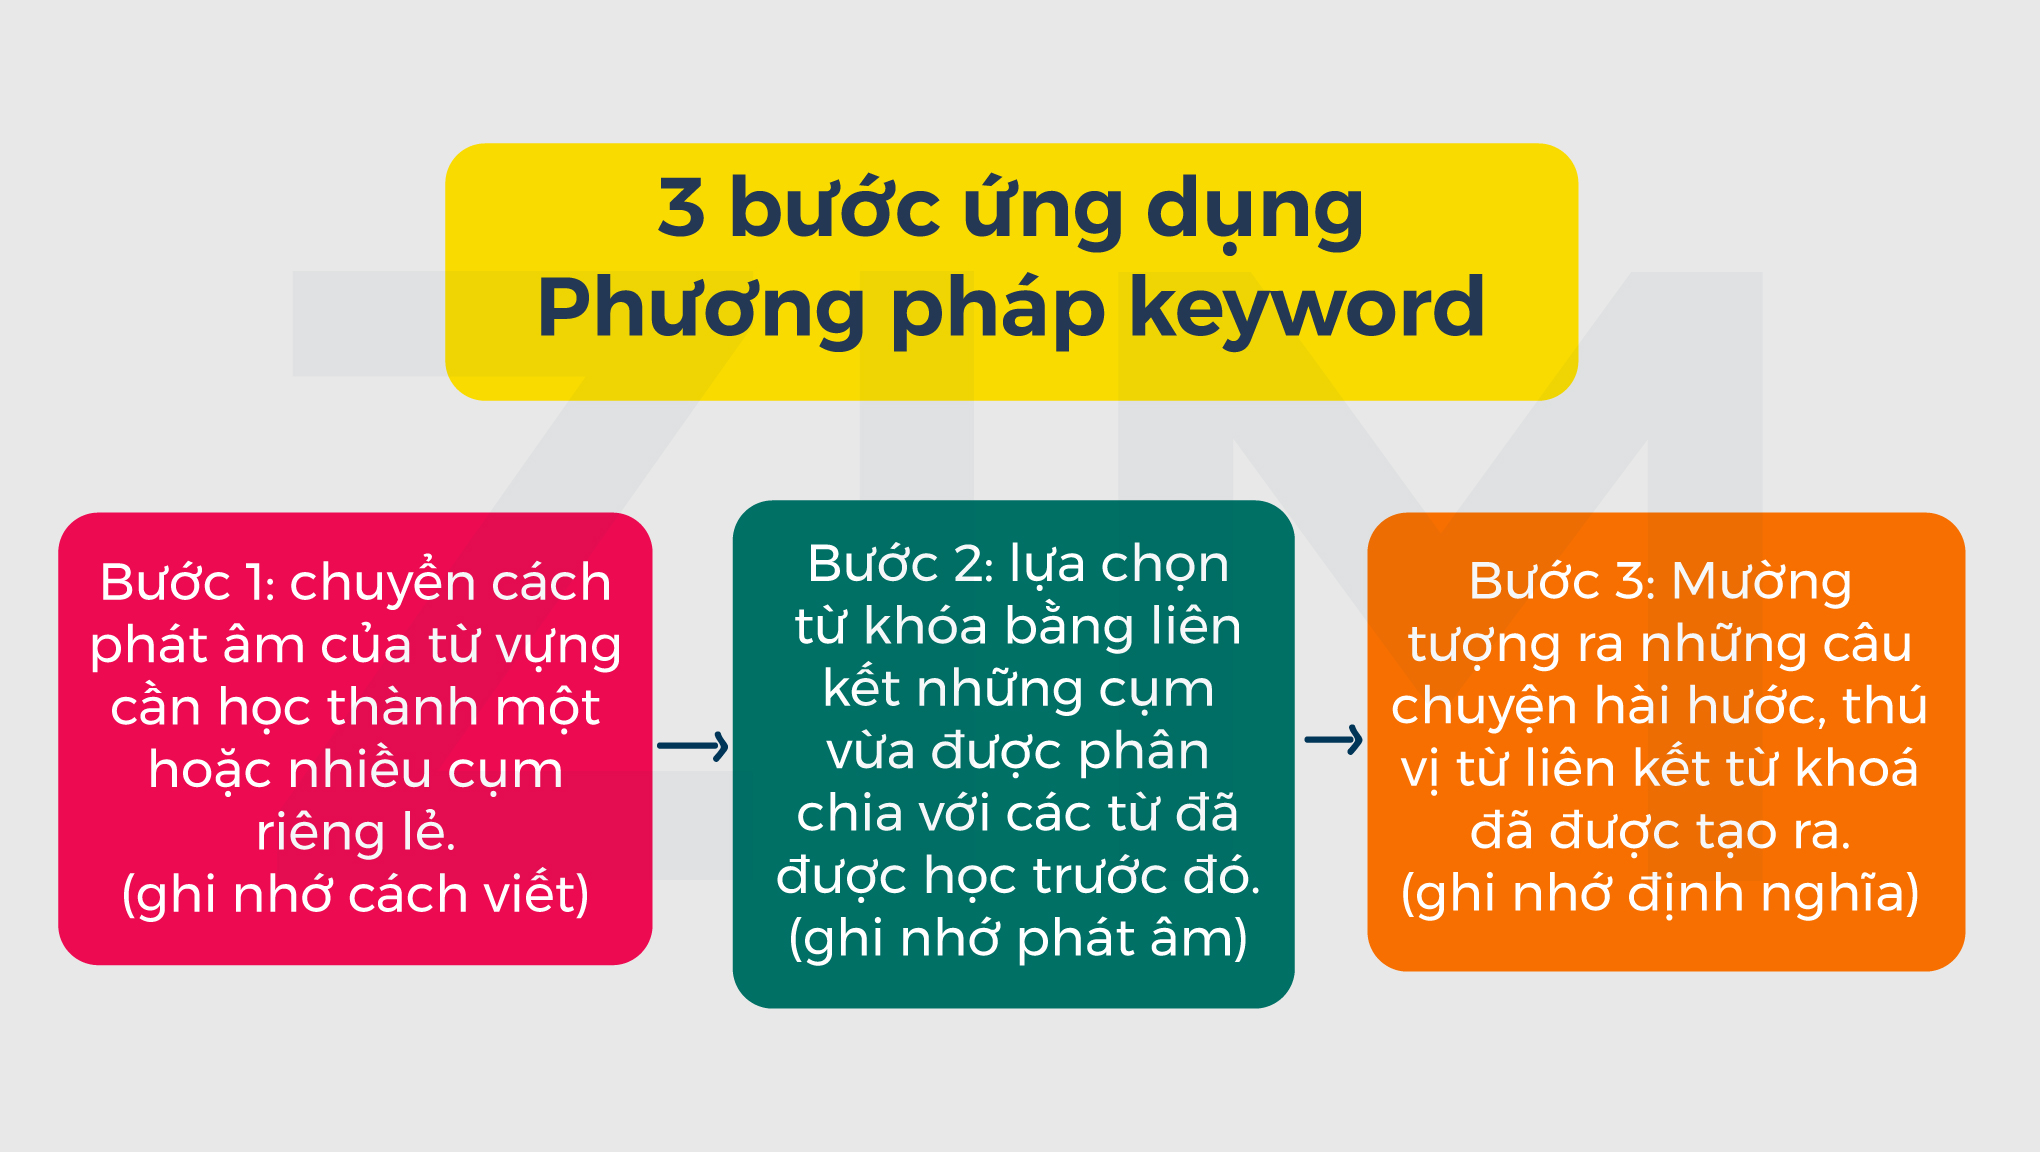 ung-dung-phuong-phap-keyword